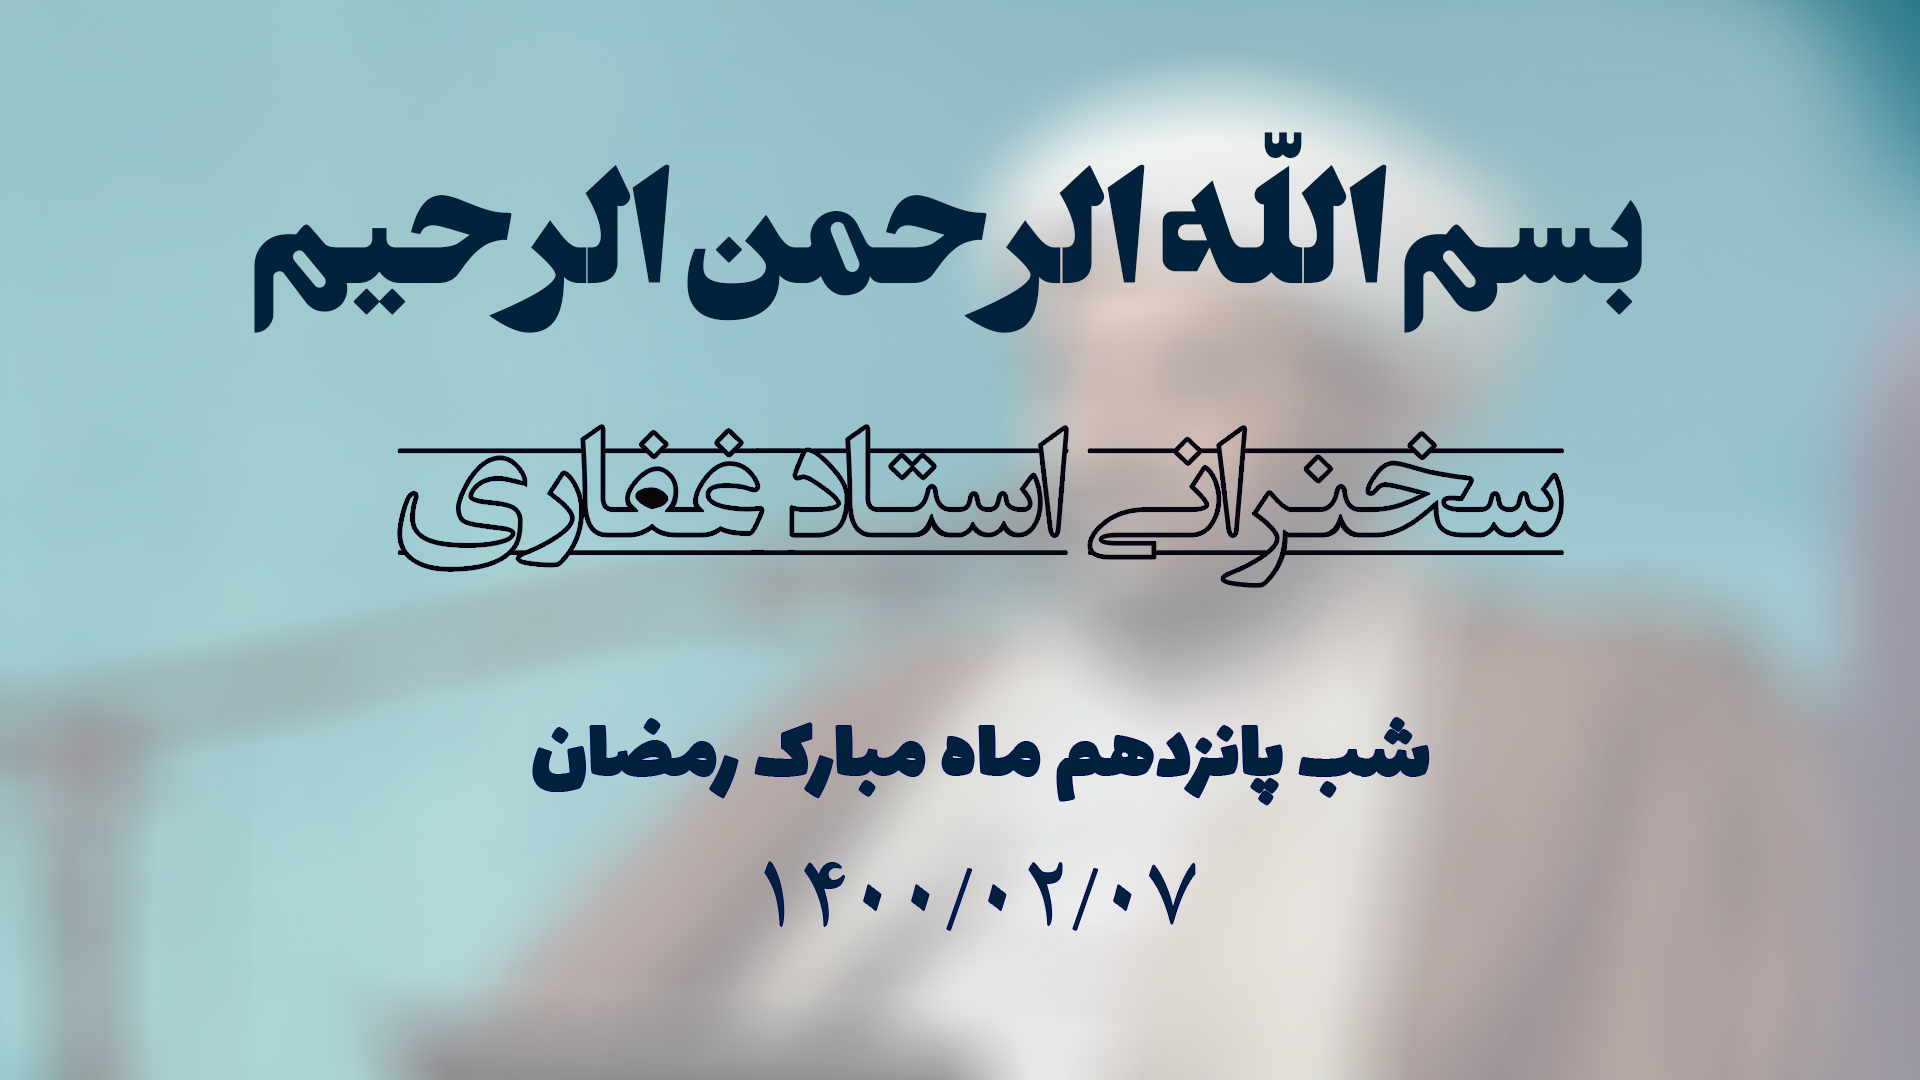 سخنرانی استاد غفاری ، شب پانزدهم ماه مبارک رمضان ۱۴۰۰/۰۲/۰7